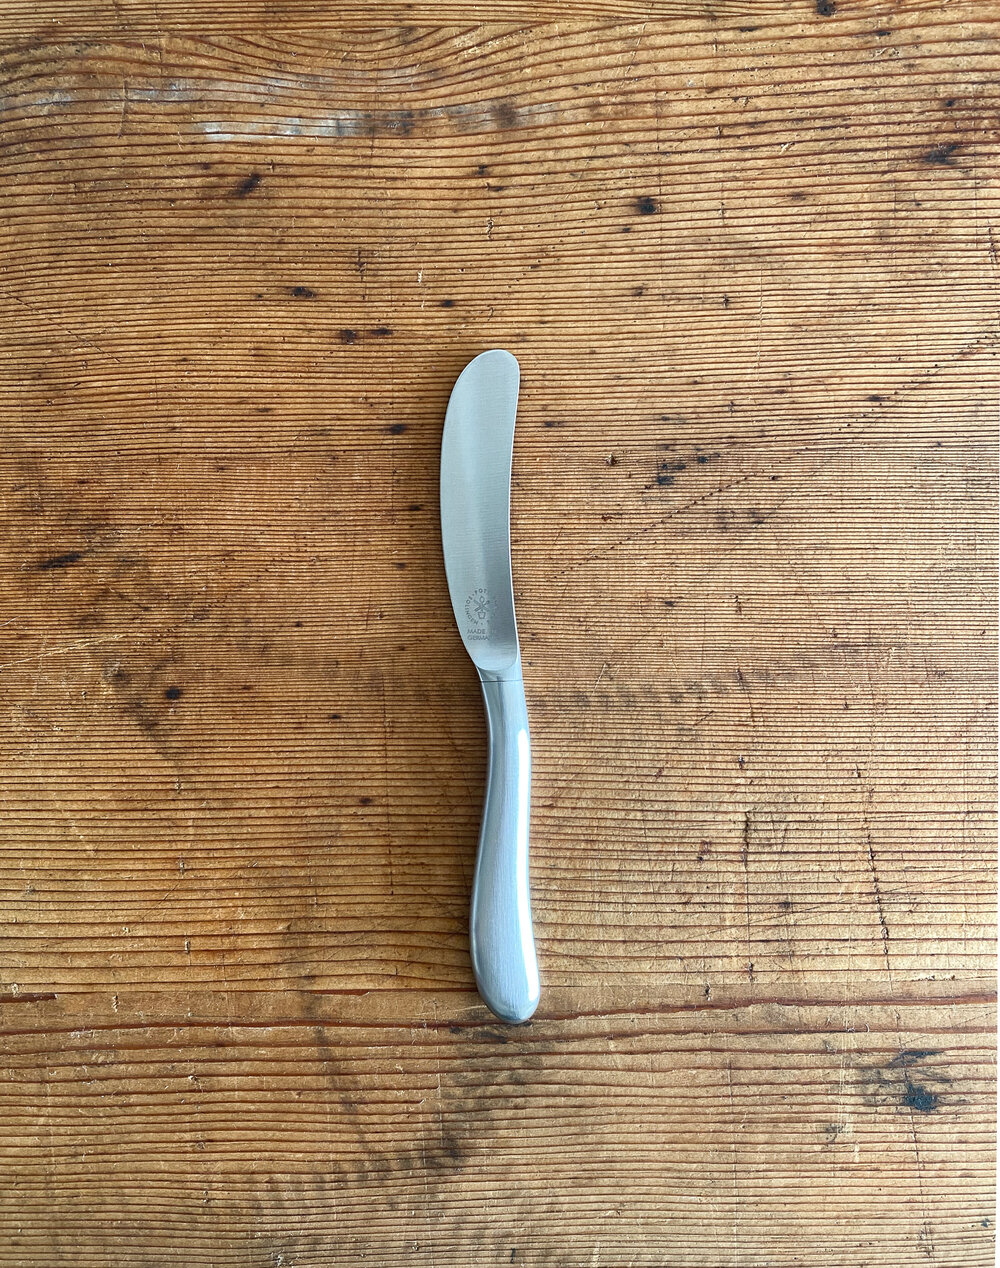 Hugo pott butter knife